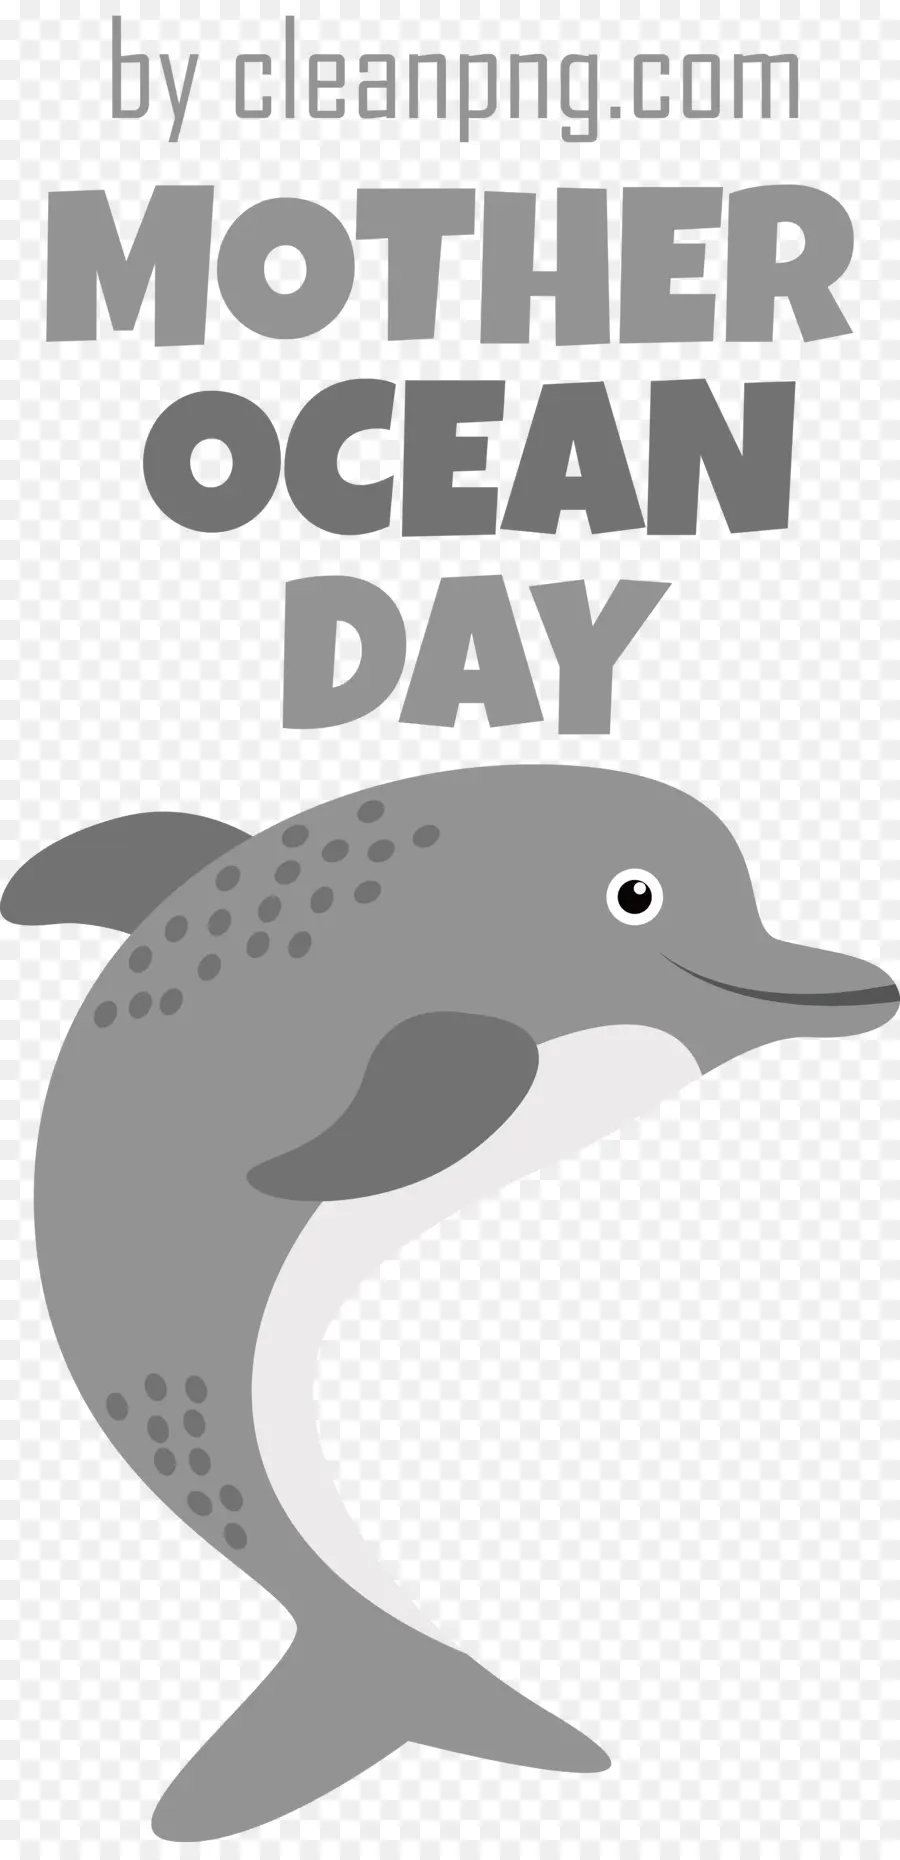 Dia Da Mãe Oceano，Dia Do Oceano Do Mundo PNG